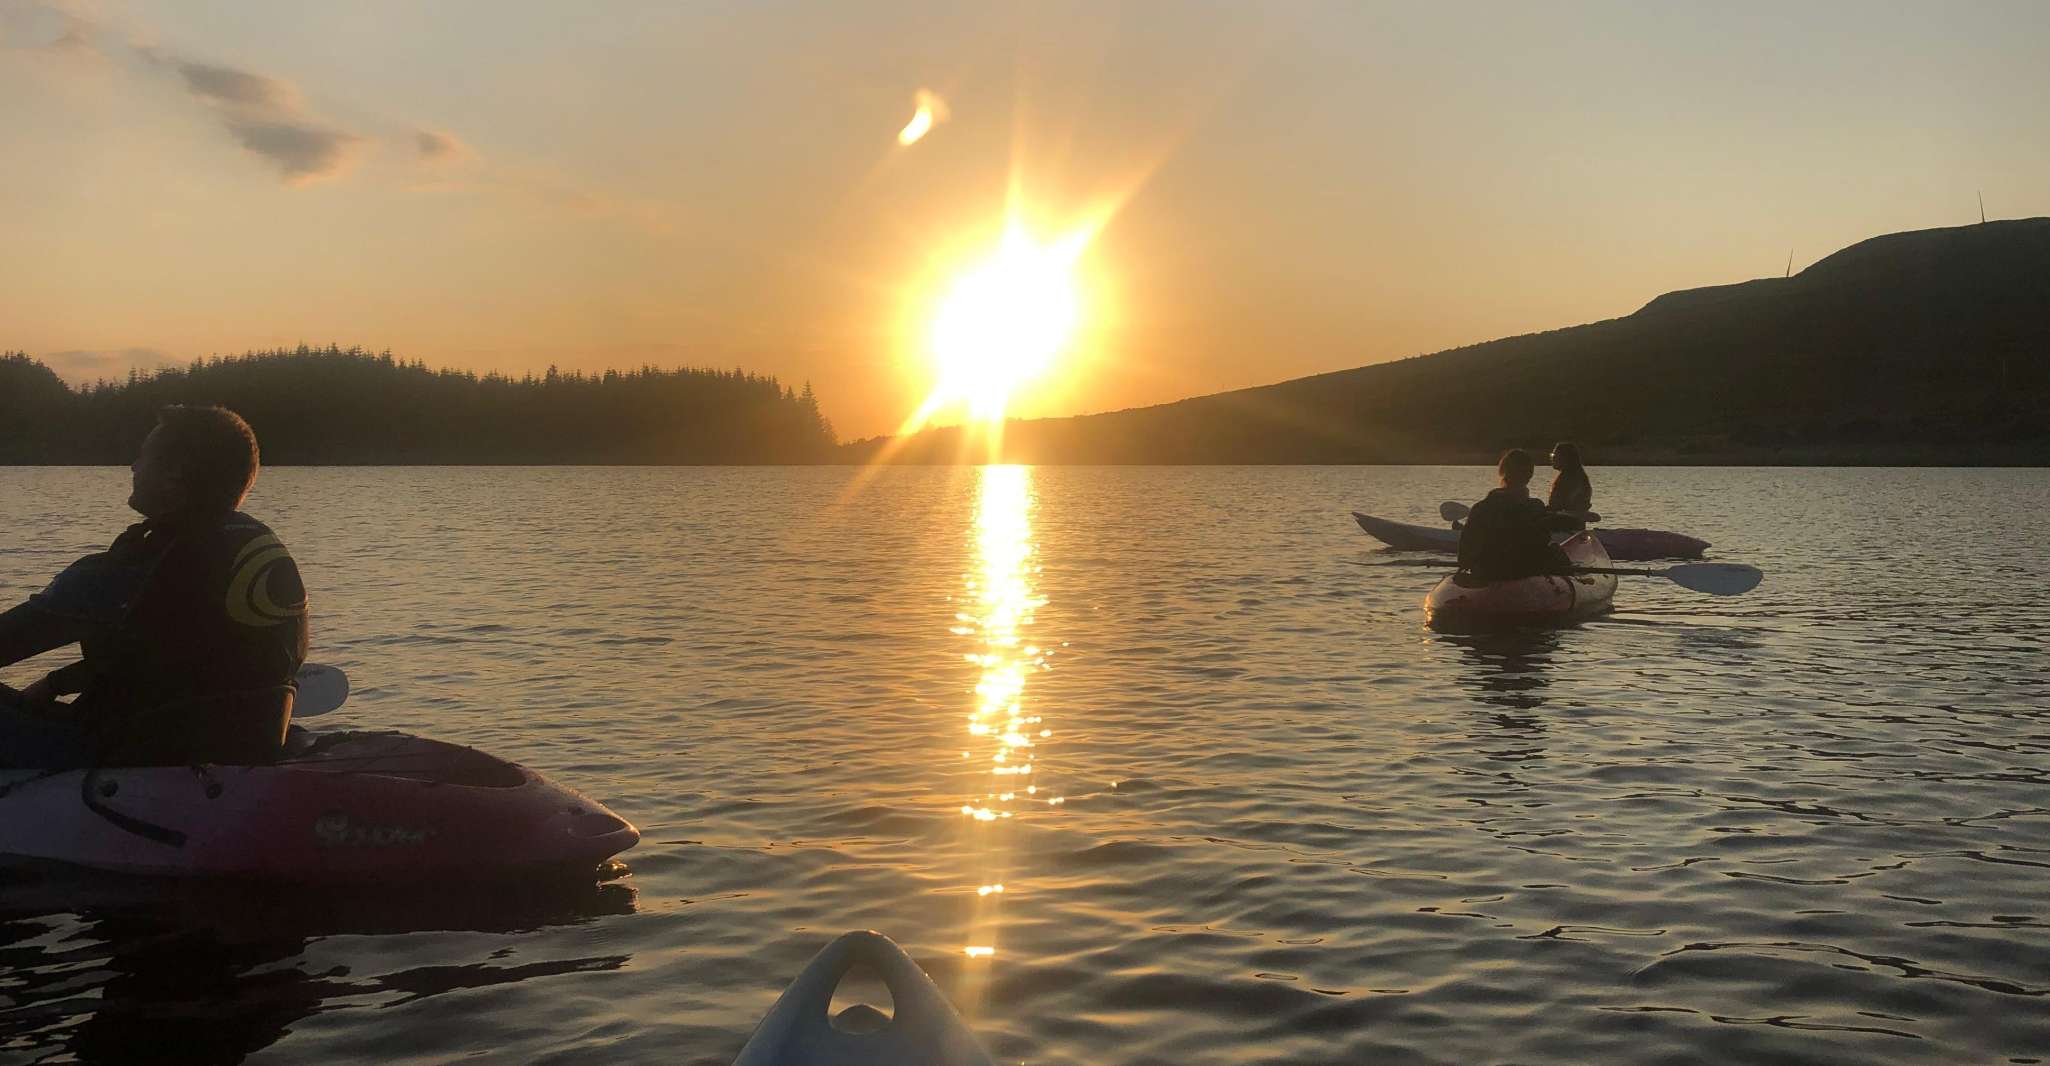 Donegal, Sunset Kayak Trip on Dunlewey Lake - Housity